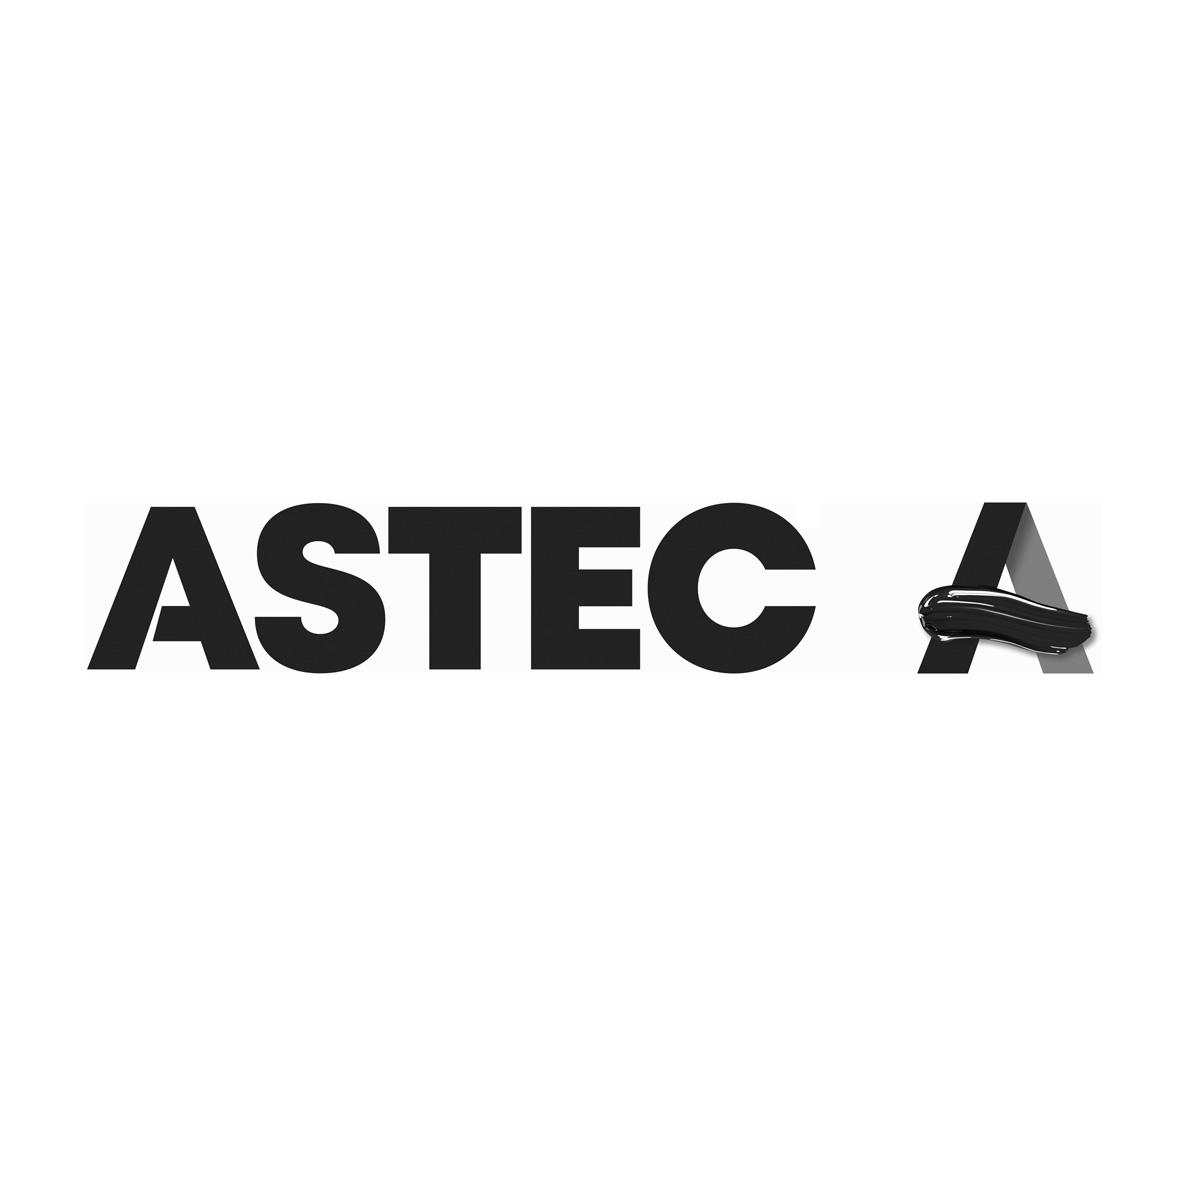 ASTEC A 商标公告